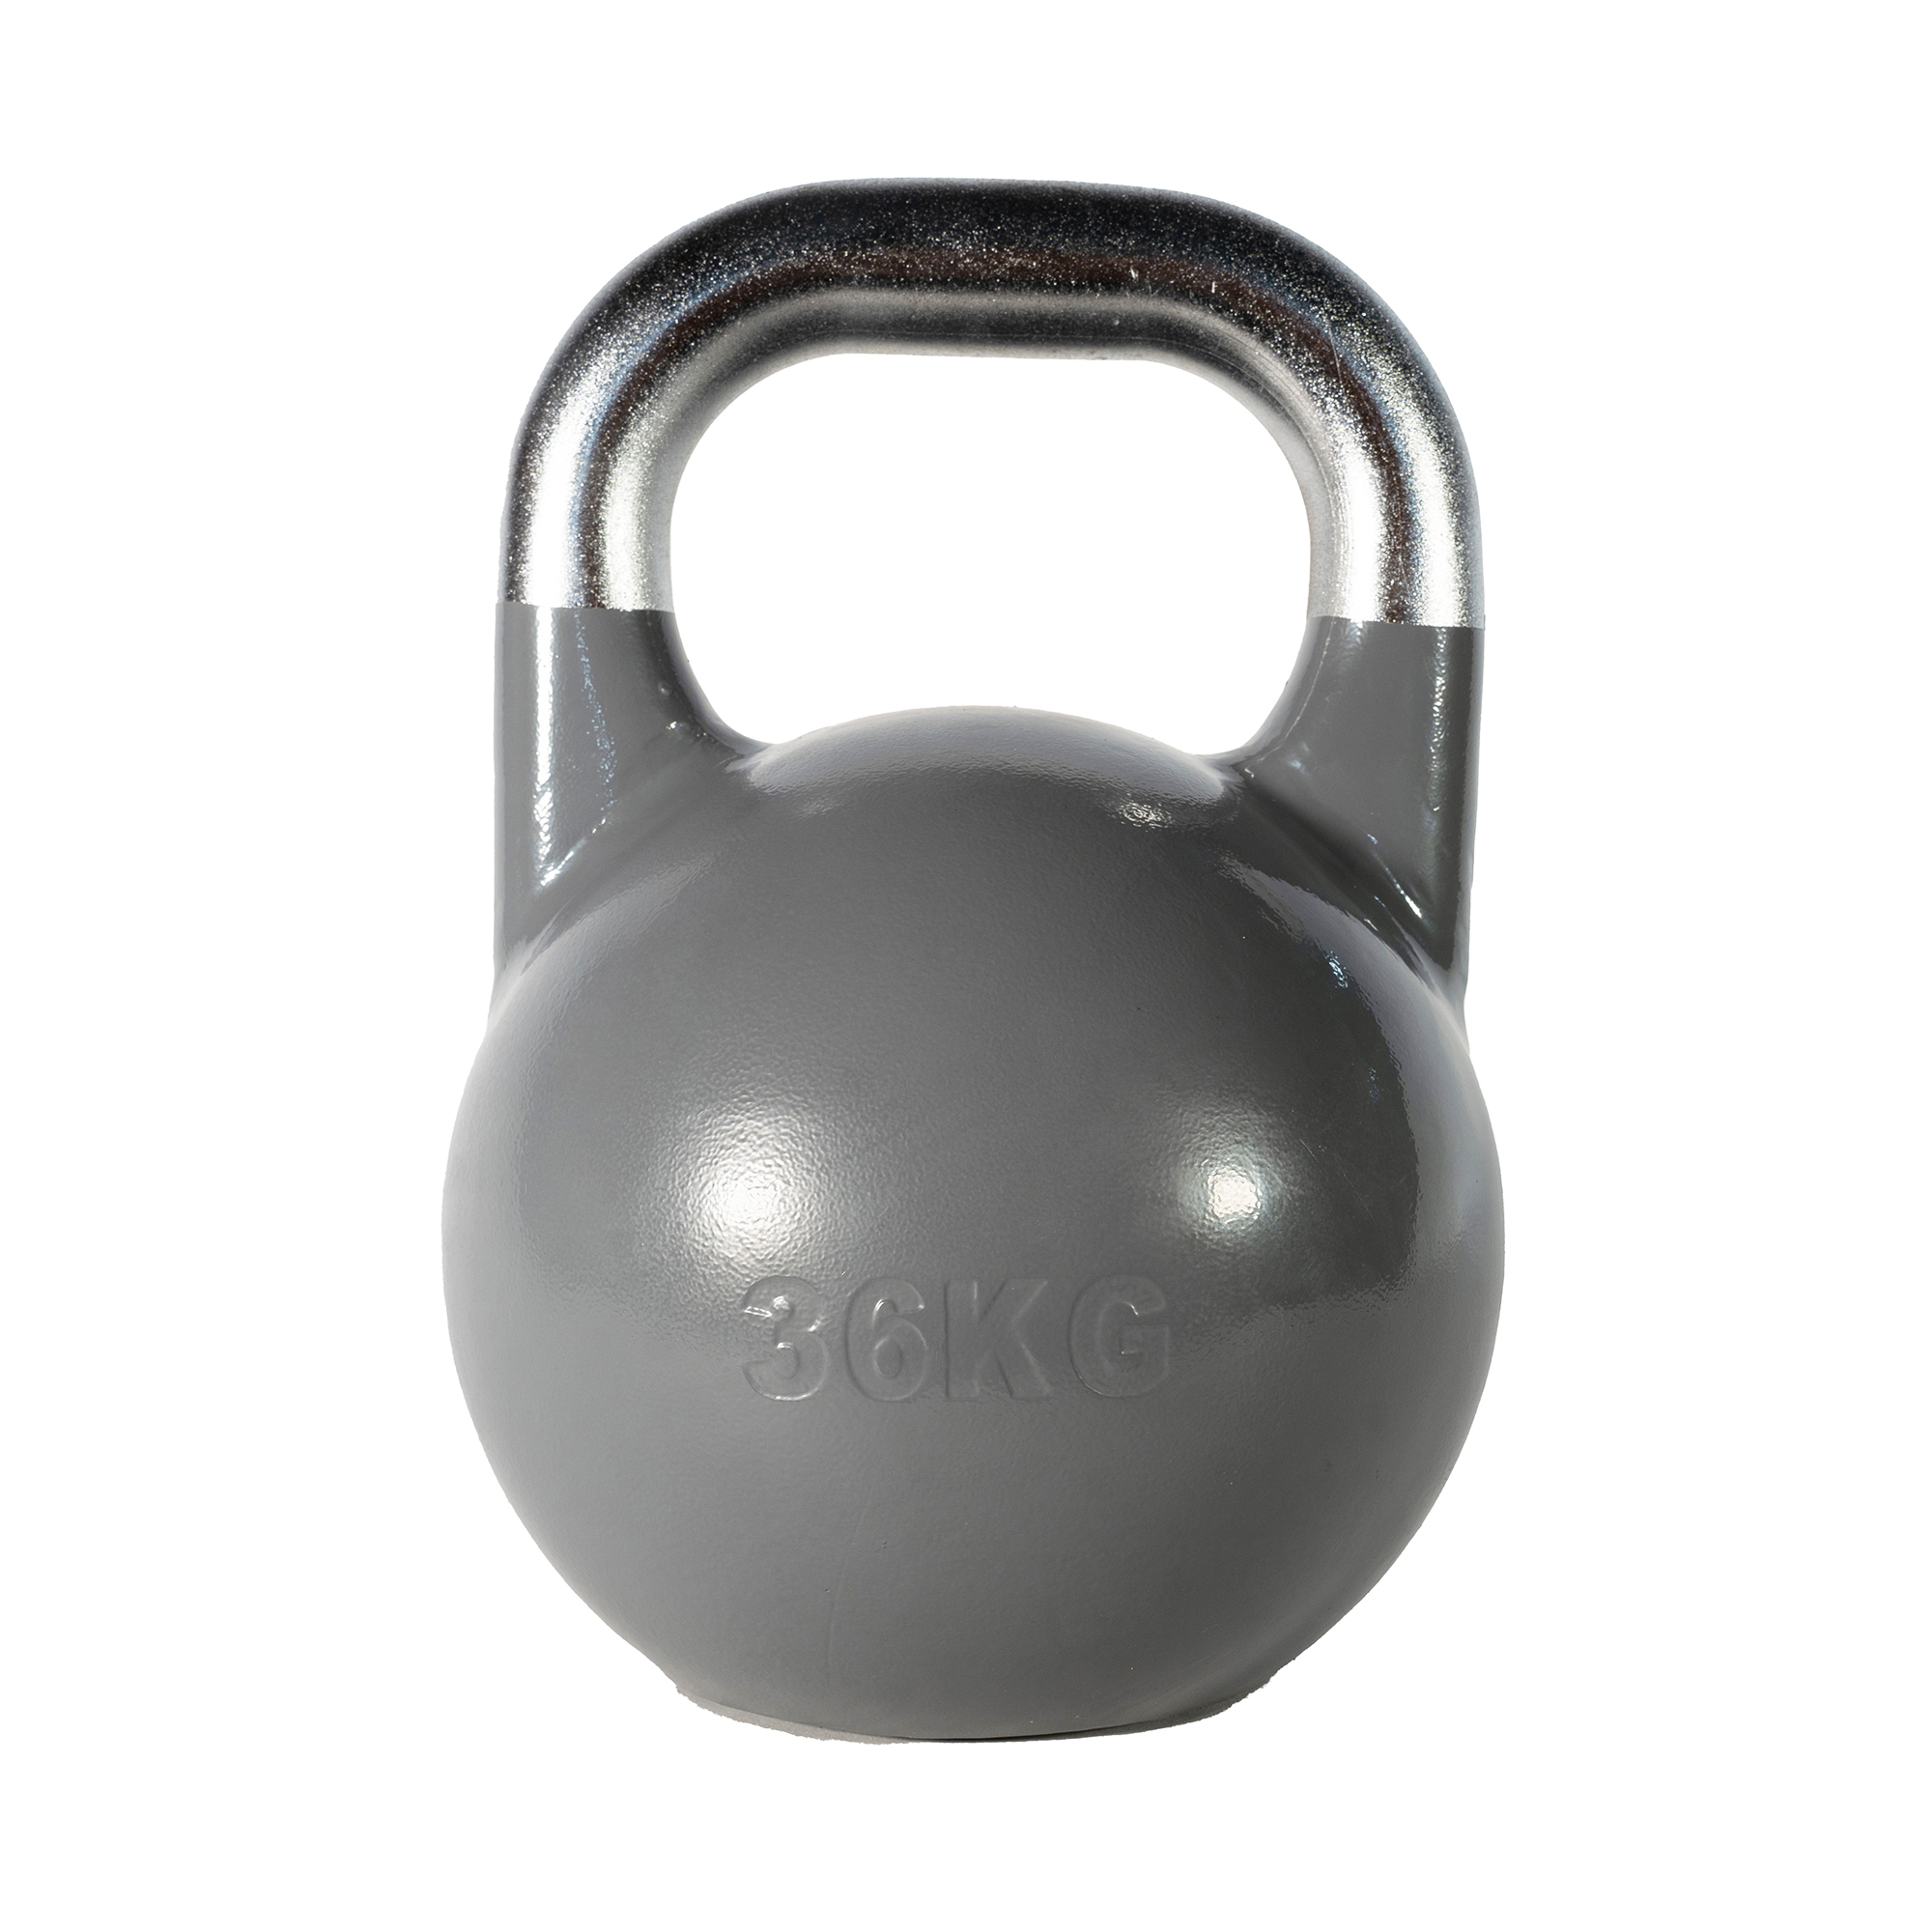 SQ&SN Competition Kettlebell (36 kg) i støbejern. Udstyr til crossfit træning, styrketræning og funktionel træning